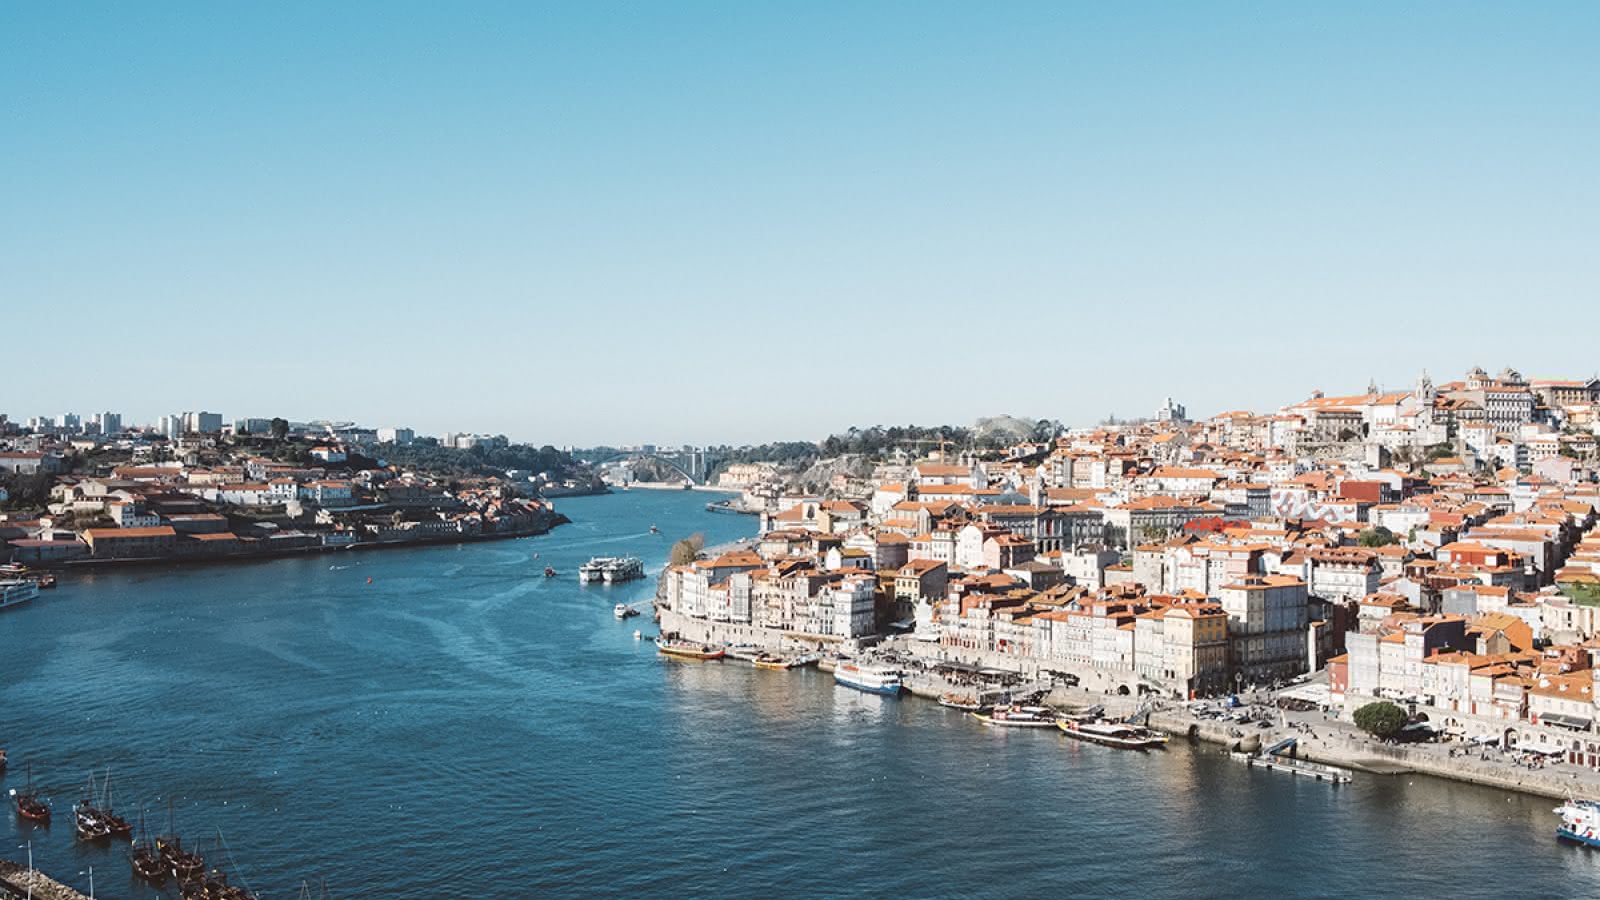 Porto-duoro-river-from-dom-luis-bridge